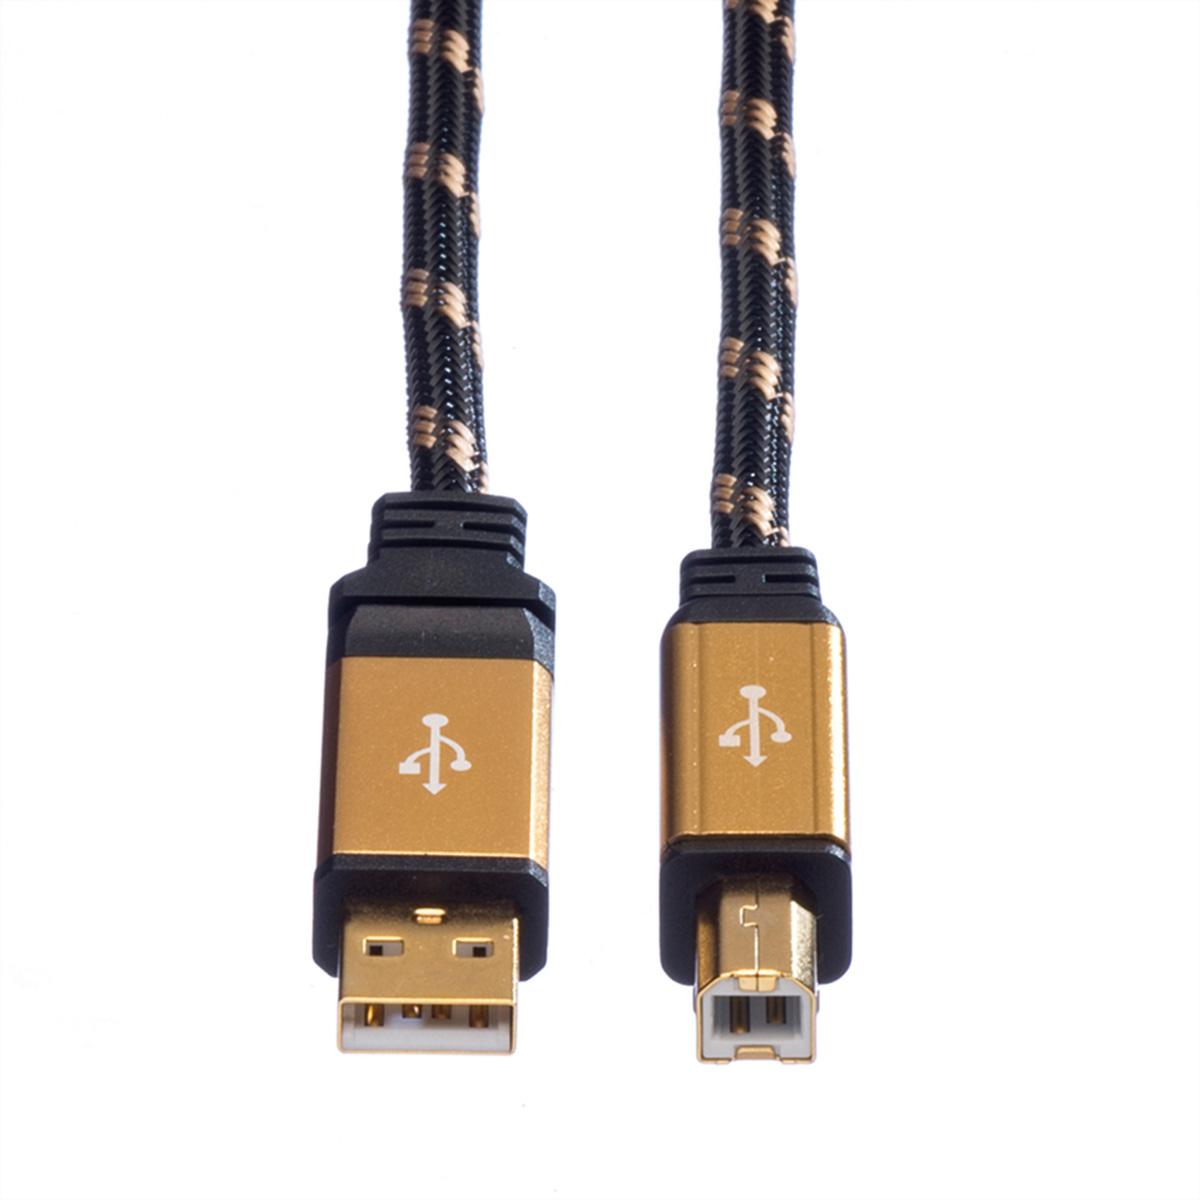 Kabel, ROLINE USB A-B Kabel Typ 2.0 GOLD 2.0 USB